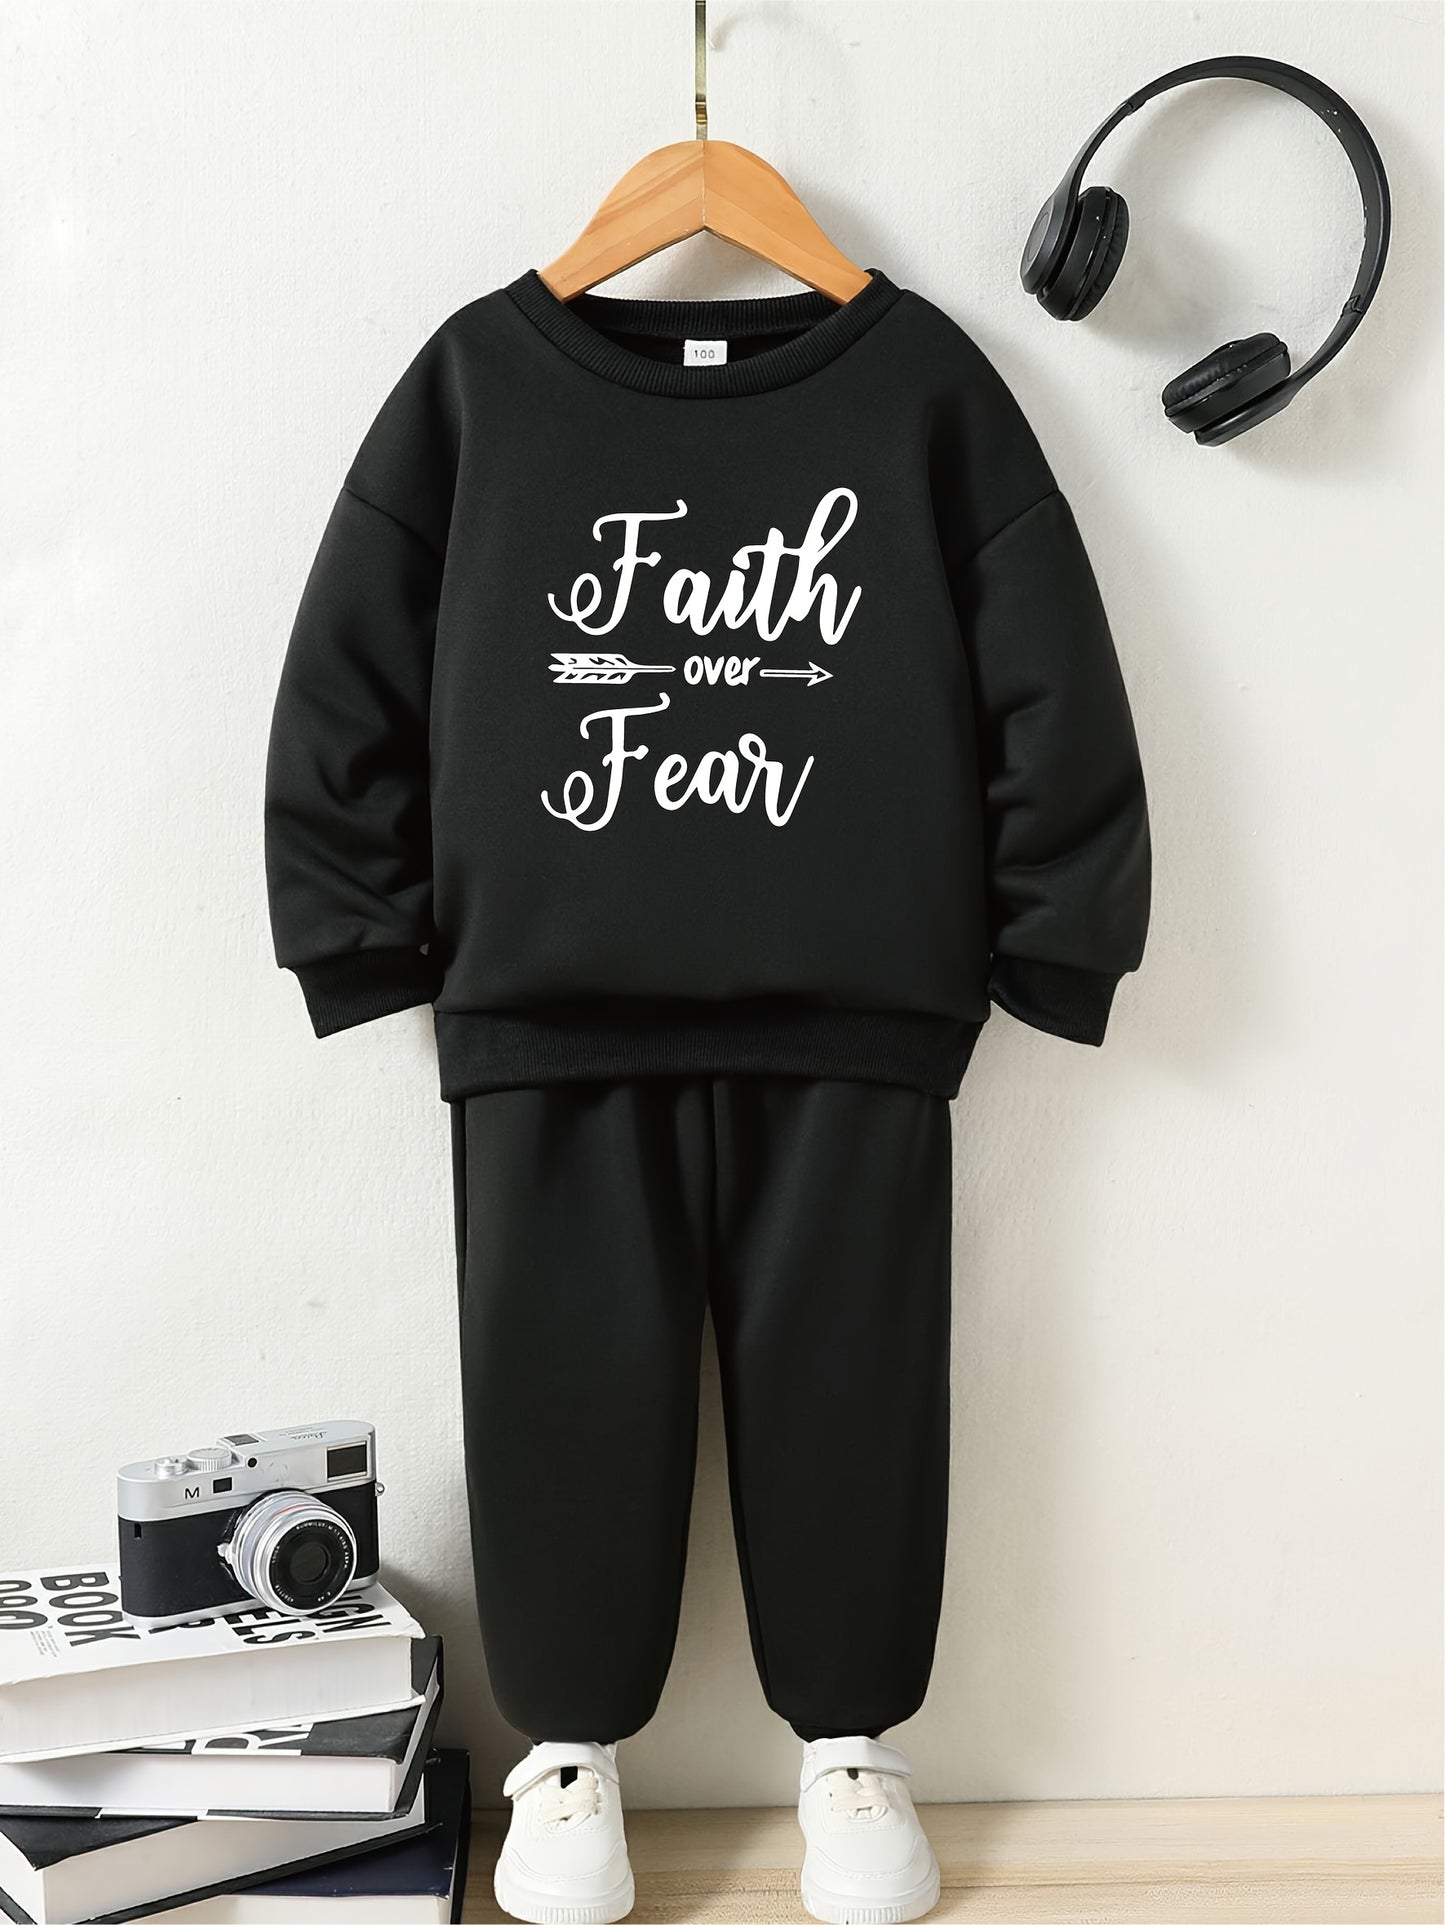 Faith Over Fear Youth Christian Casual Outfit claimedbygoddesigns